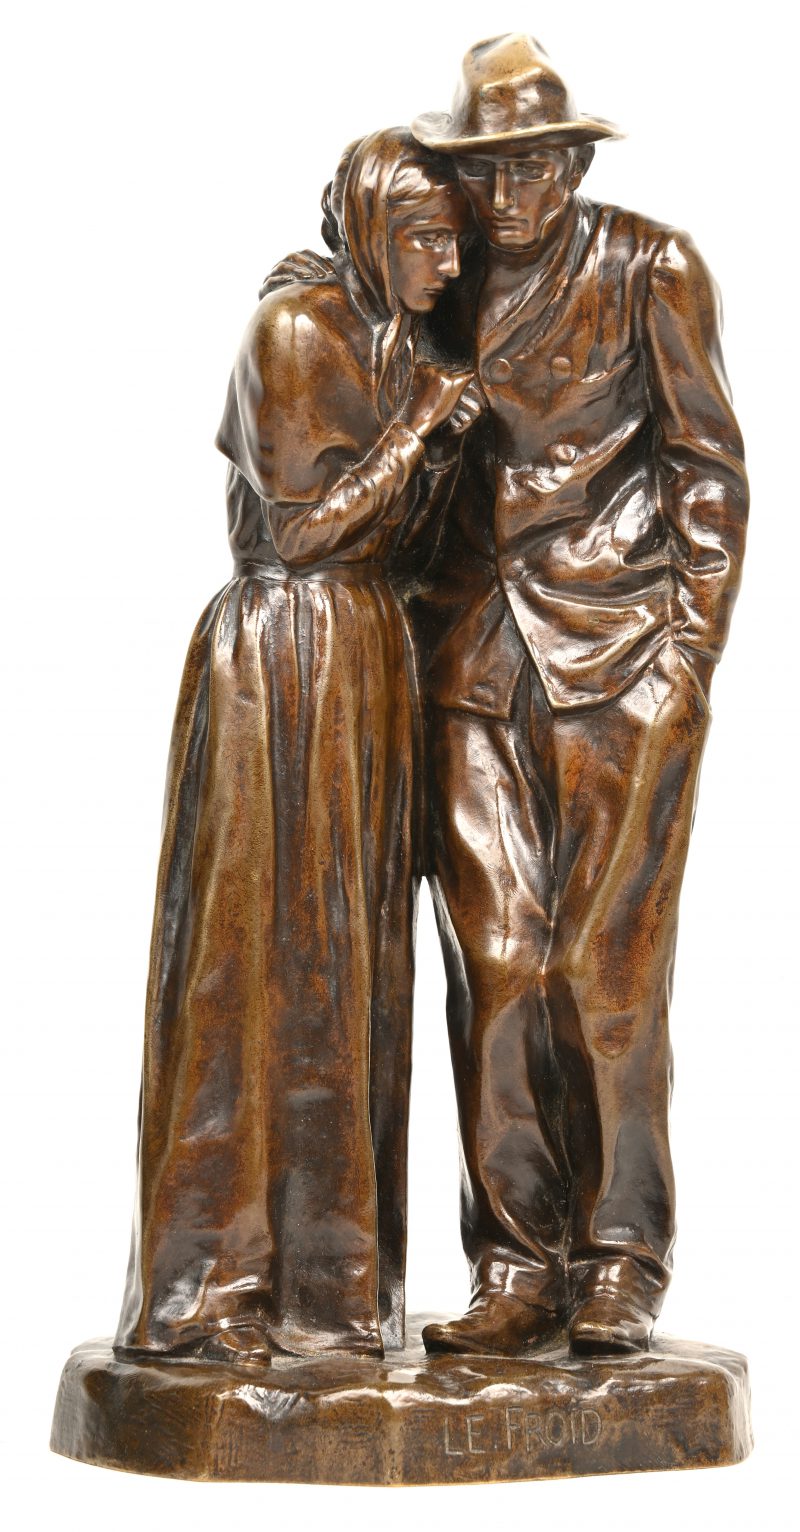 “Le Froid”, bronzen beeld van koppel in de koude, gesigneerd onderaan “P. Roger Bloche”.